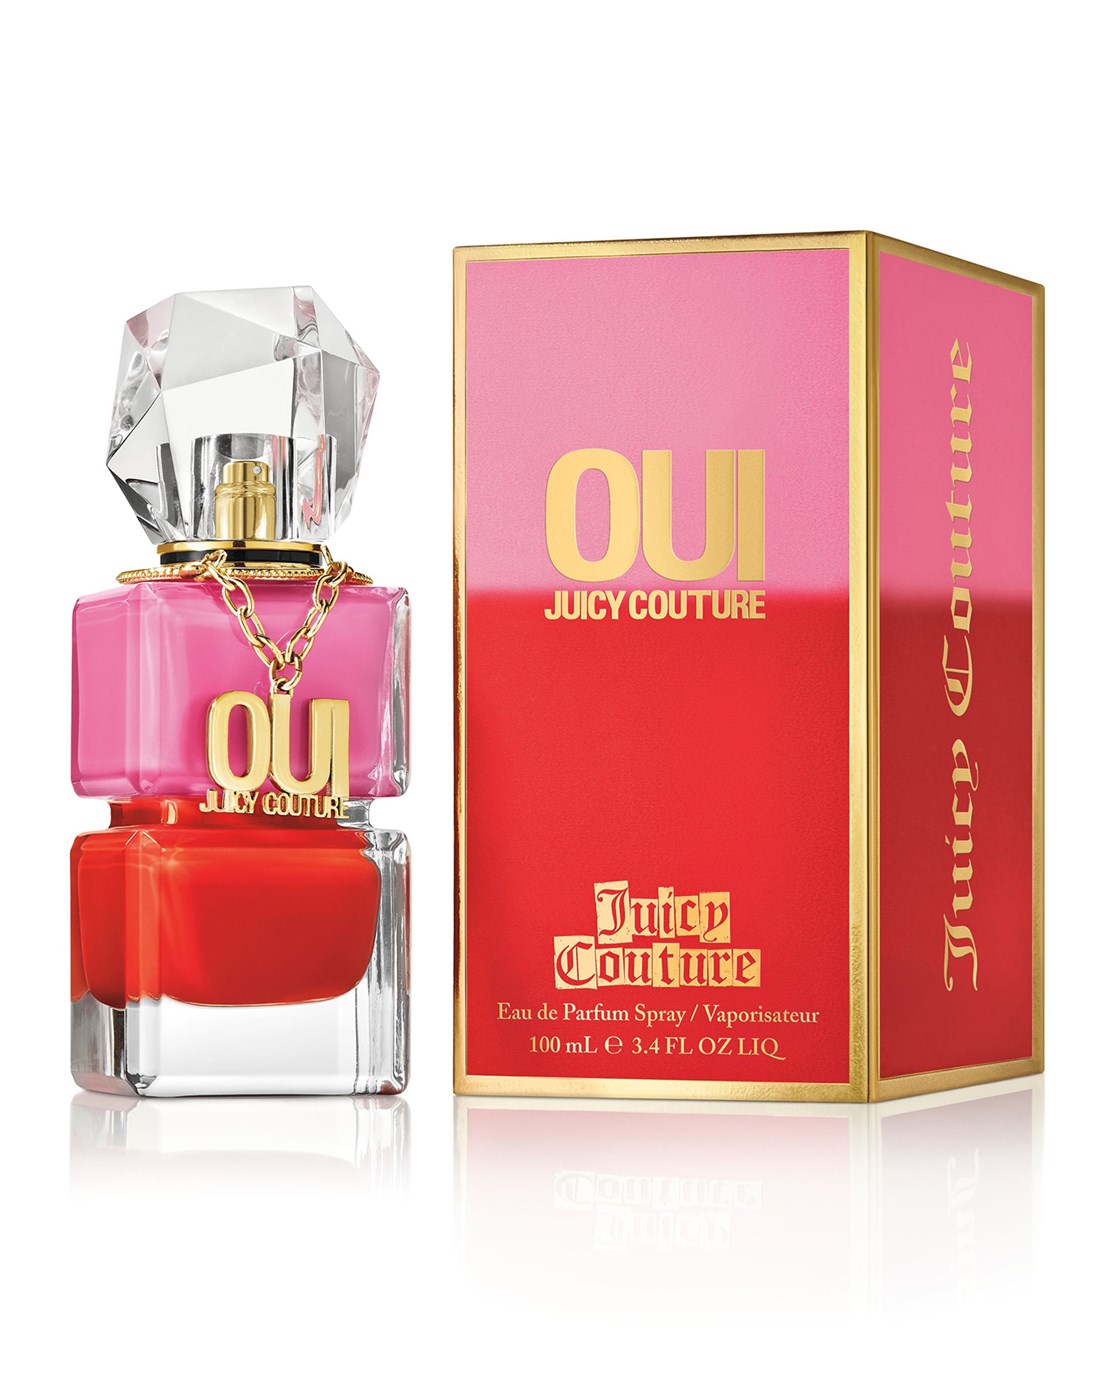 Juicy Couture OUI  3.4 oz Eau de Parfum